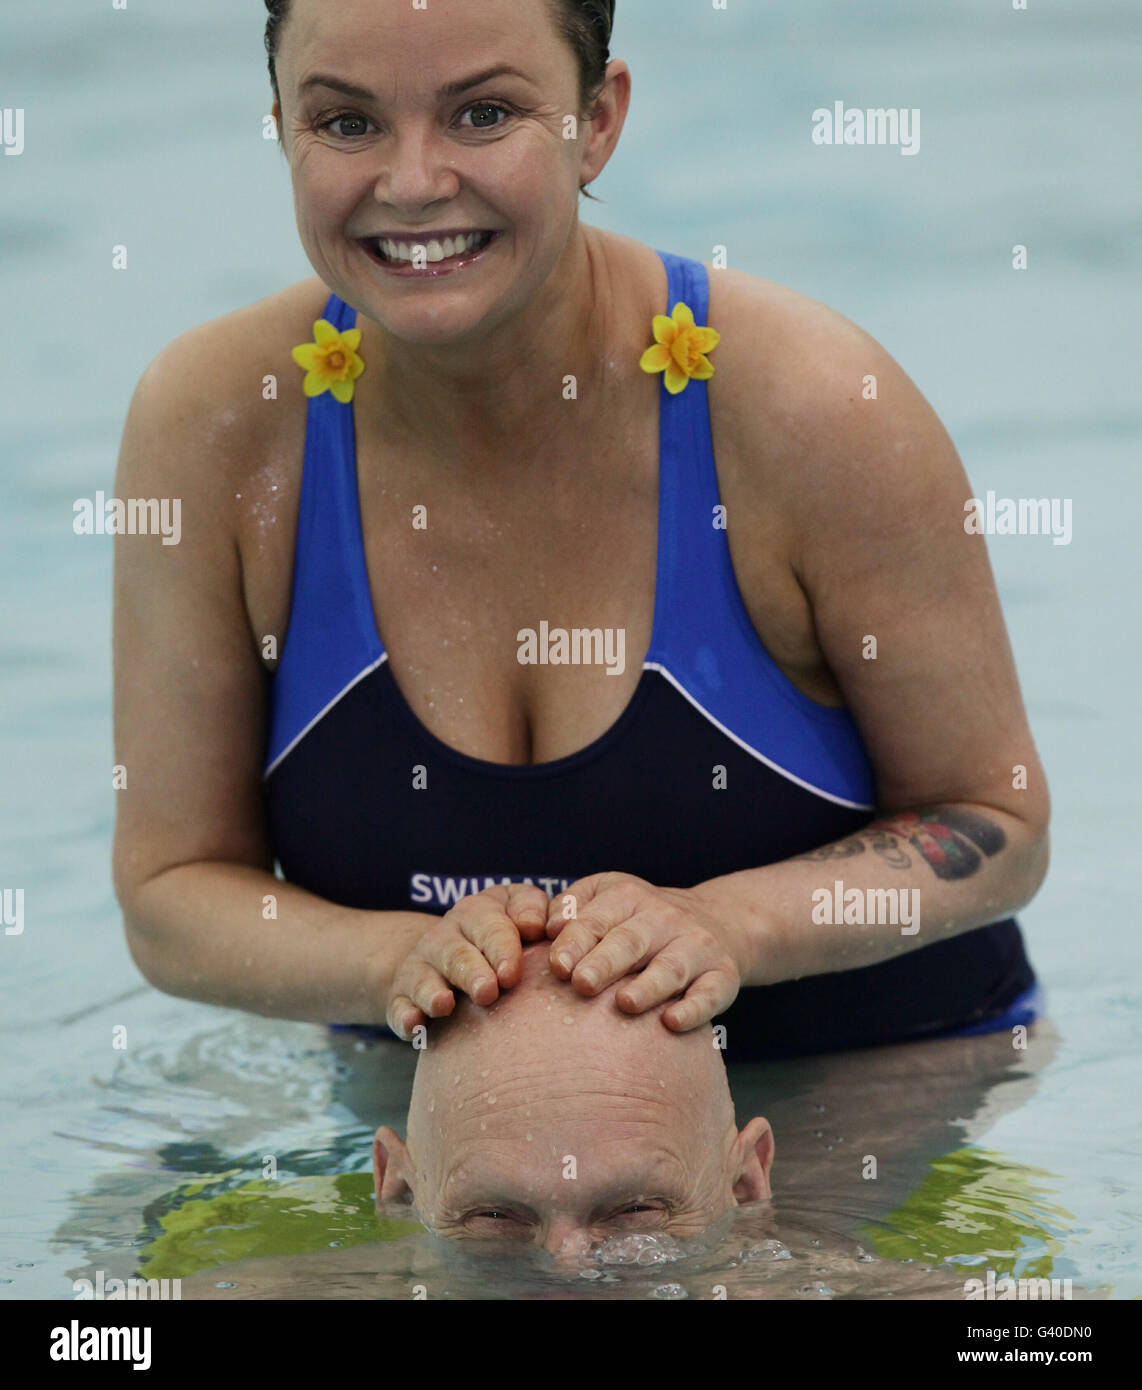 Gail porter et Duncan Goodhew lors du lancement de Swimathon, la plus grande piscine de collecte de fonds au monde, avec plus de 22,000 nageurs participant à travers le Royaume-Uni pour recueillir des fonds pour Marie Curie cancer Care, au centre de loisirs Marshall Street dans le centre de Londres. Banque D'Images